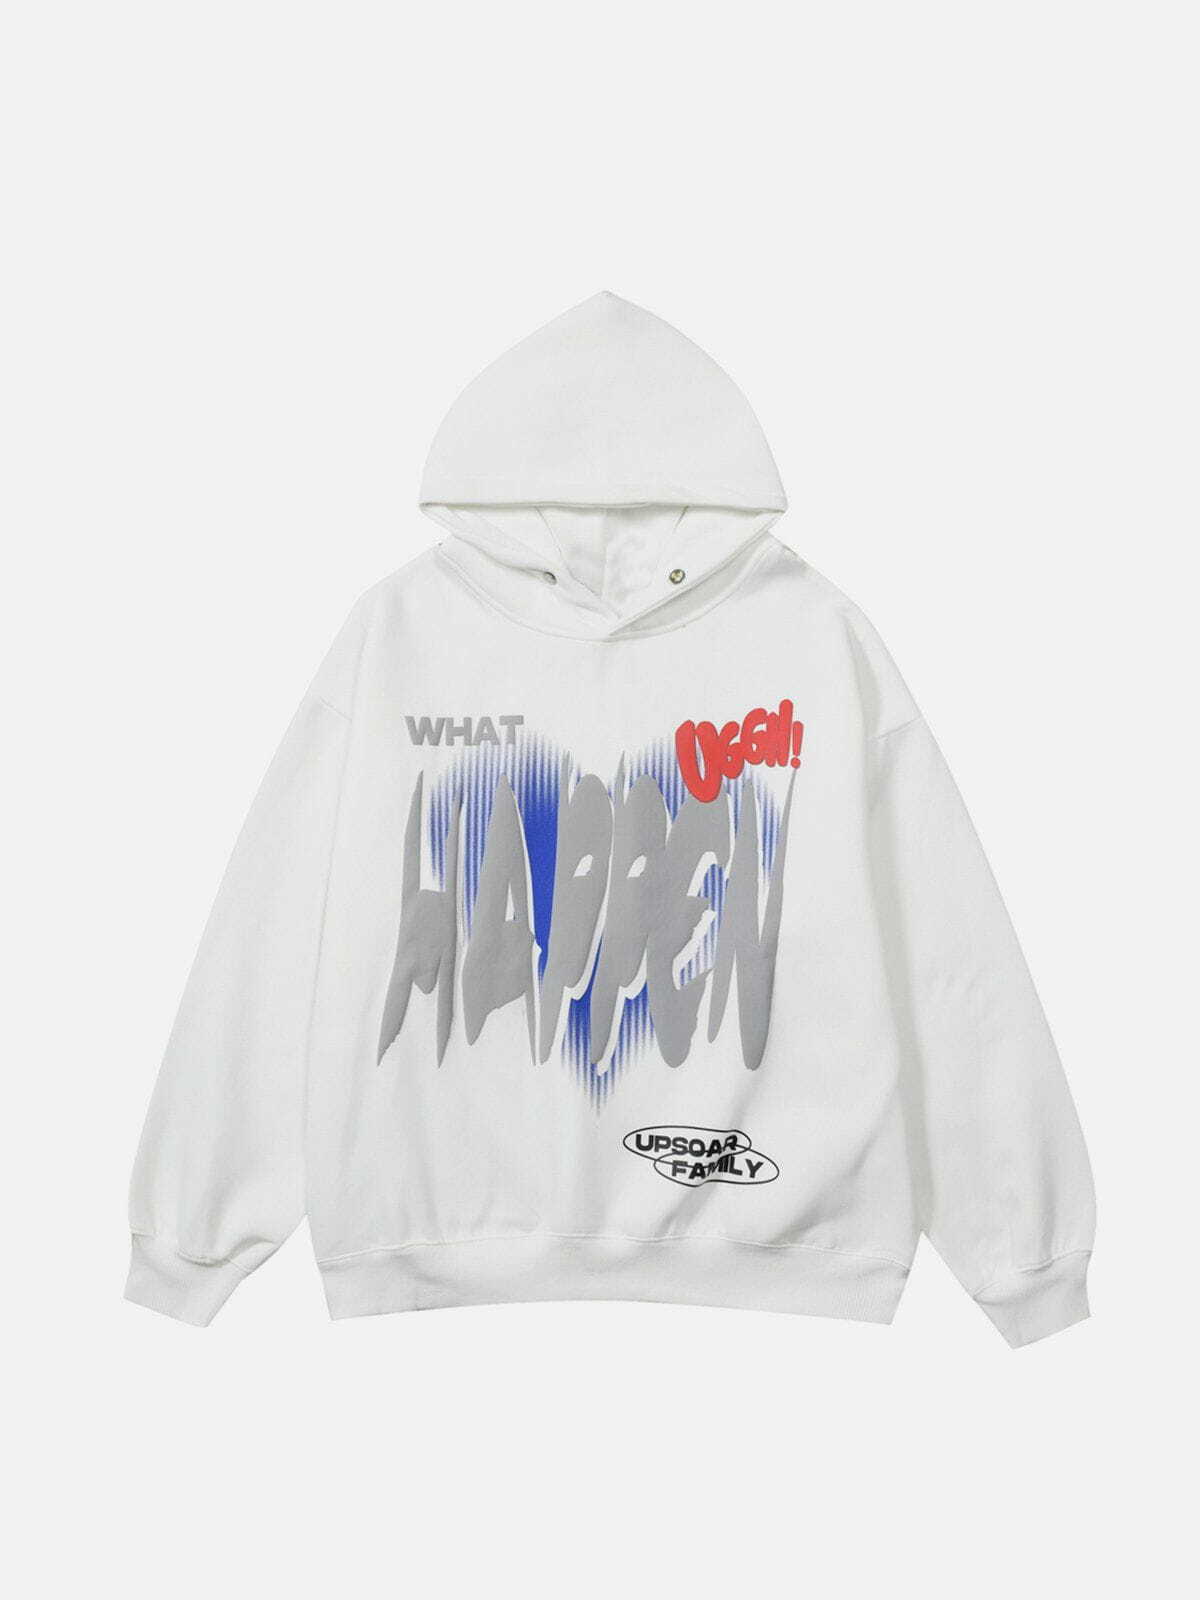 cosmic print hoodie retro y2k streetwear essential 1414